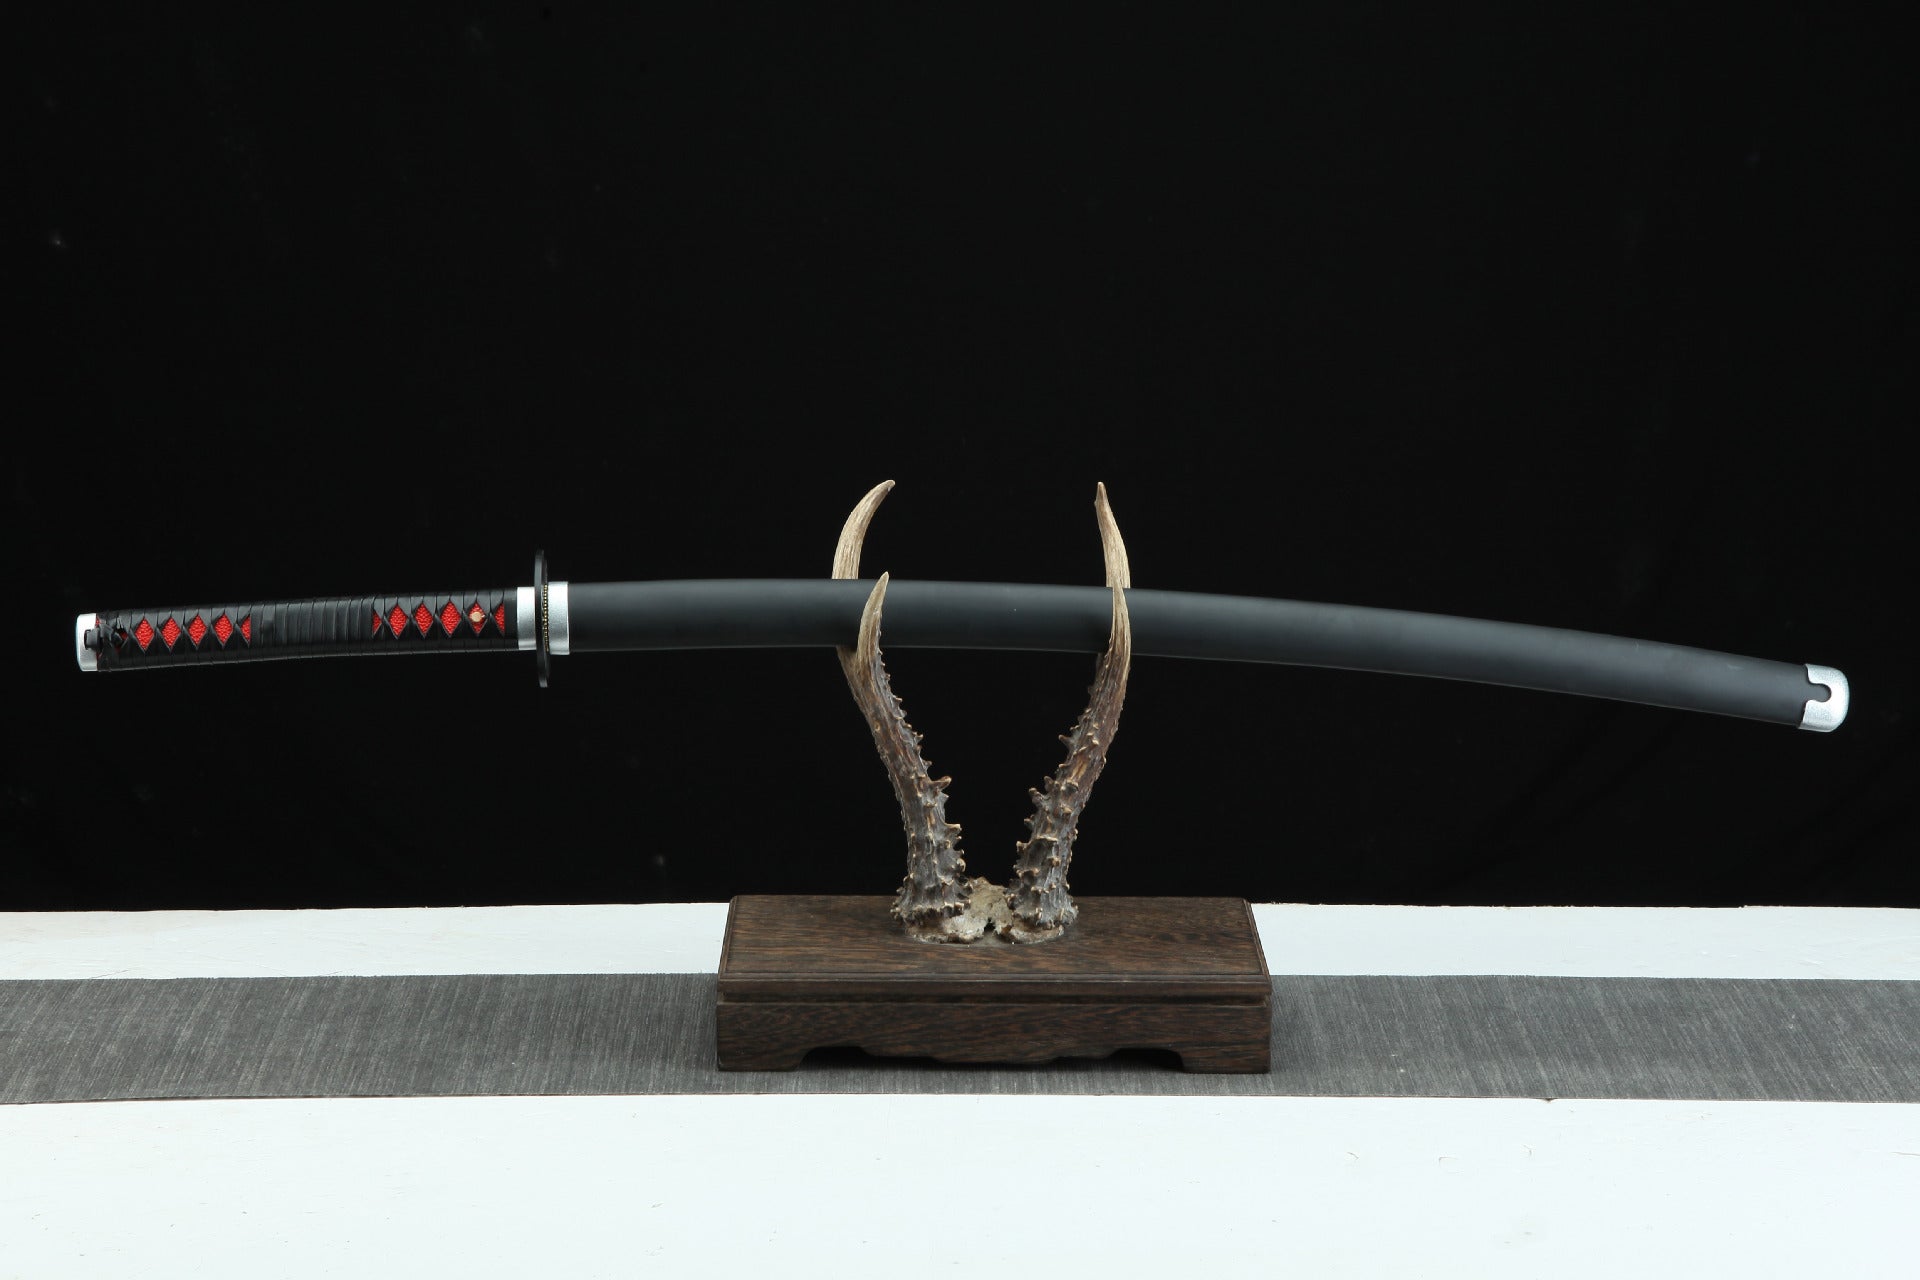 Tanjiro's Nichirin Sword sheathed